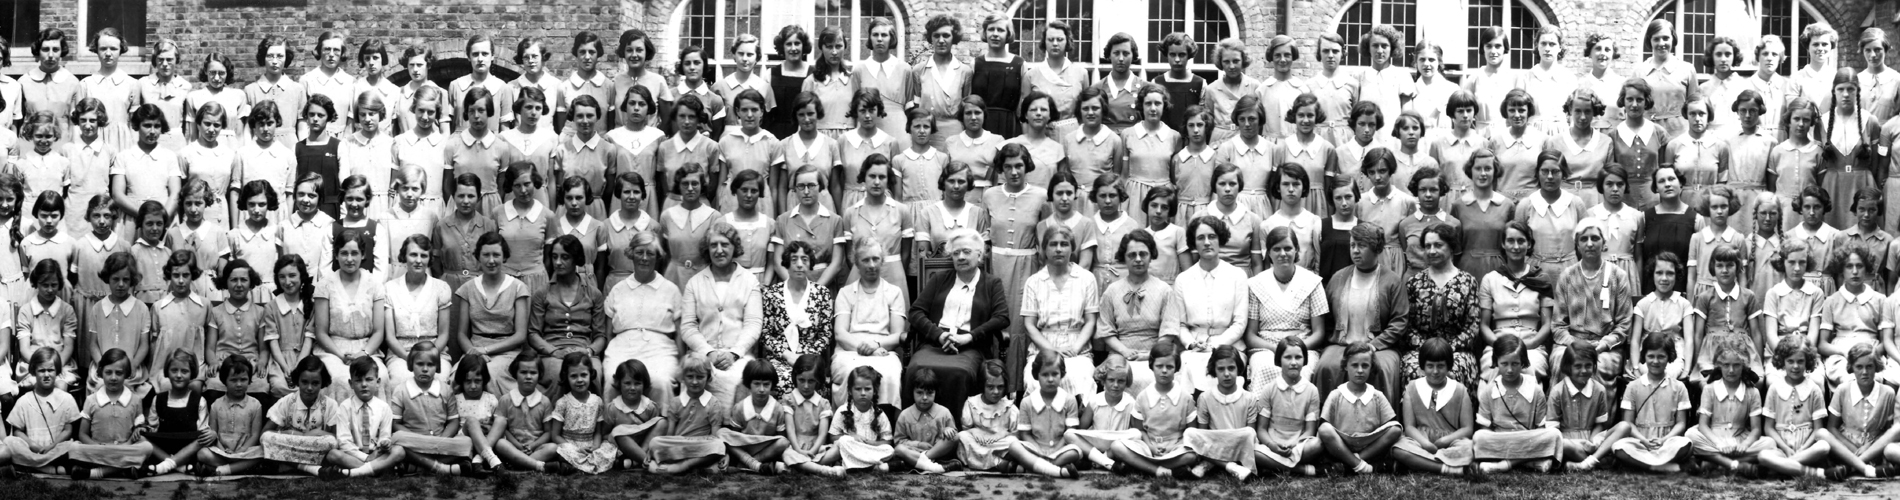 1935 School